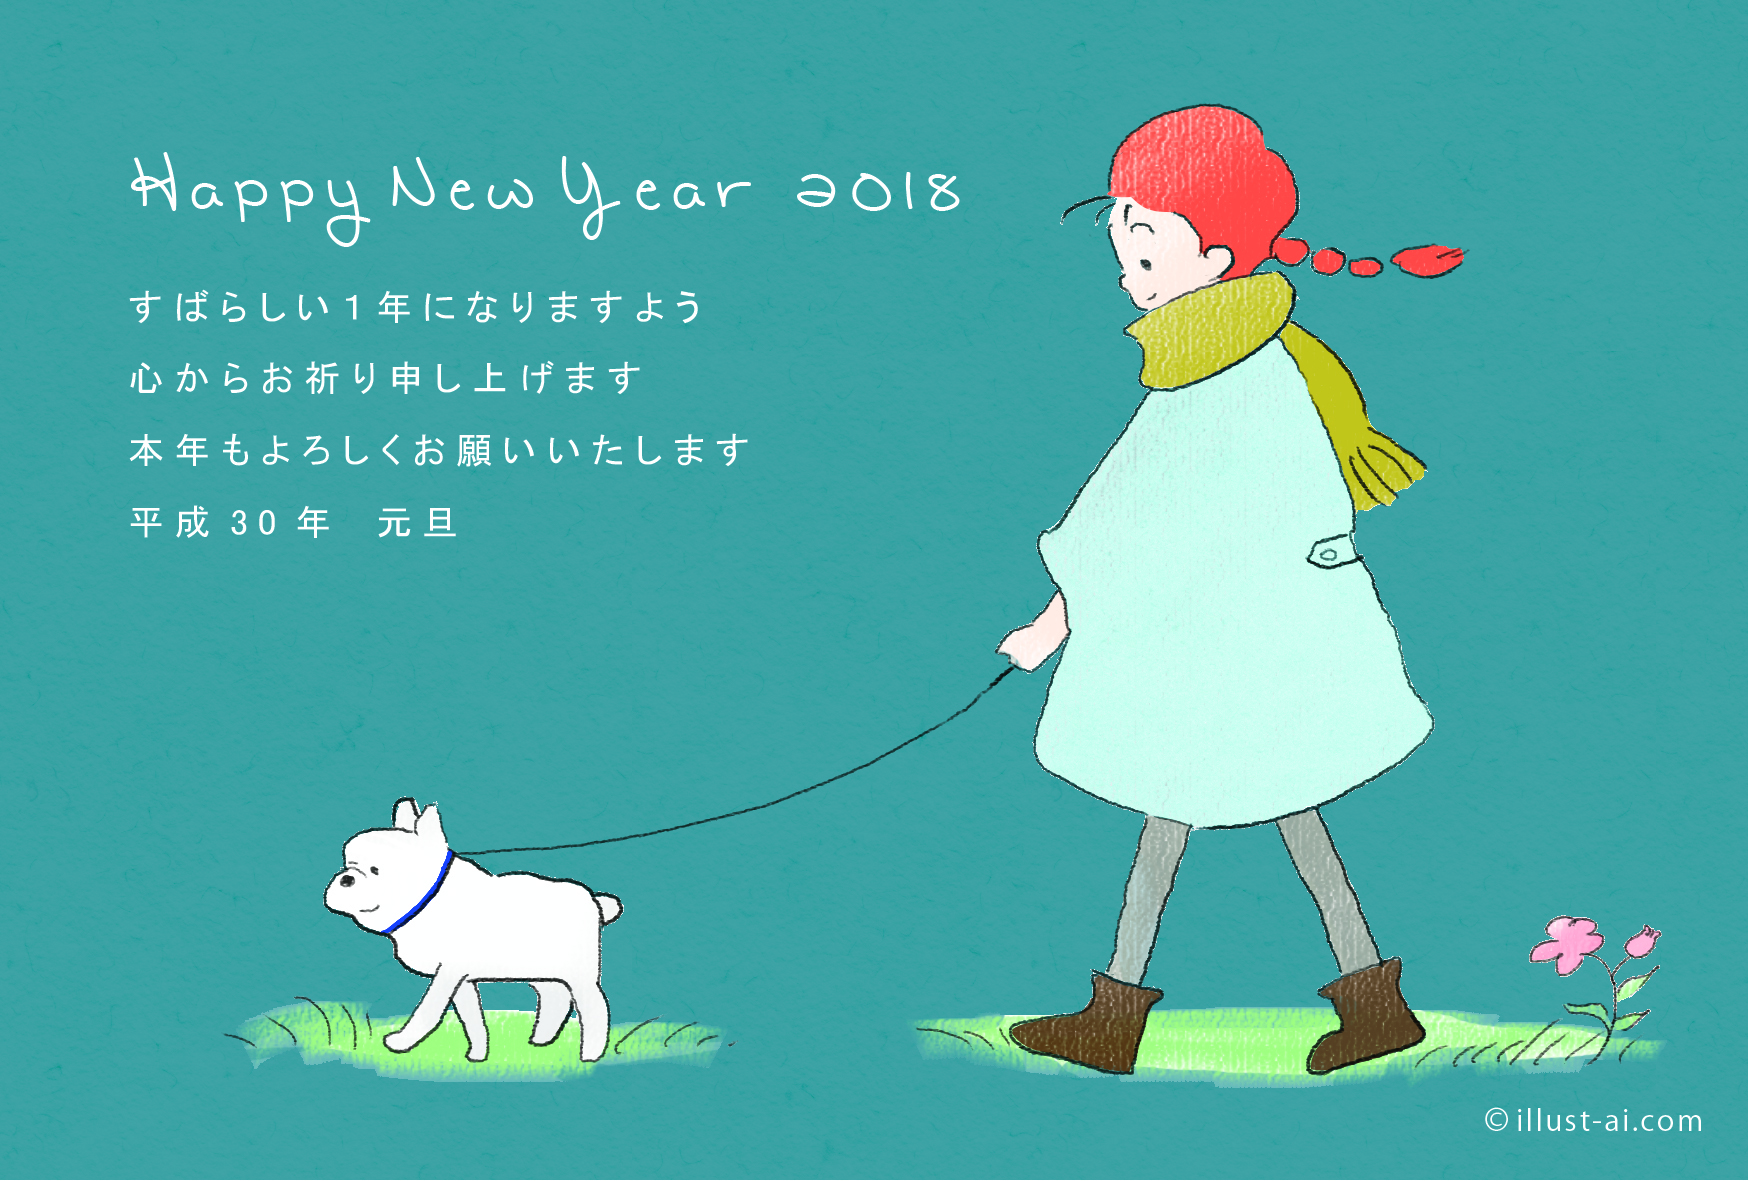 年賀状 戌年 ほっこりする犬を散歩する少女 年賀状18無料イラスト素材集